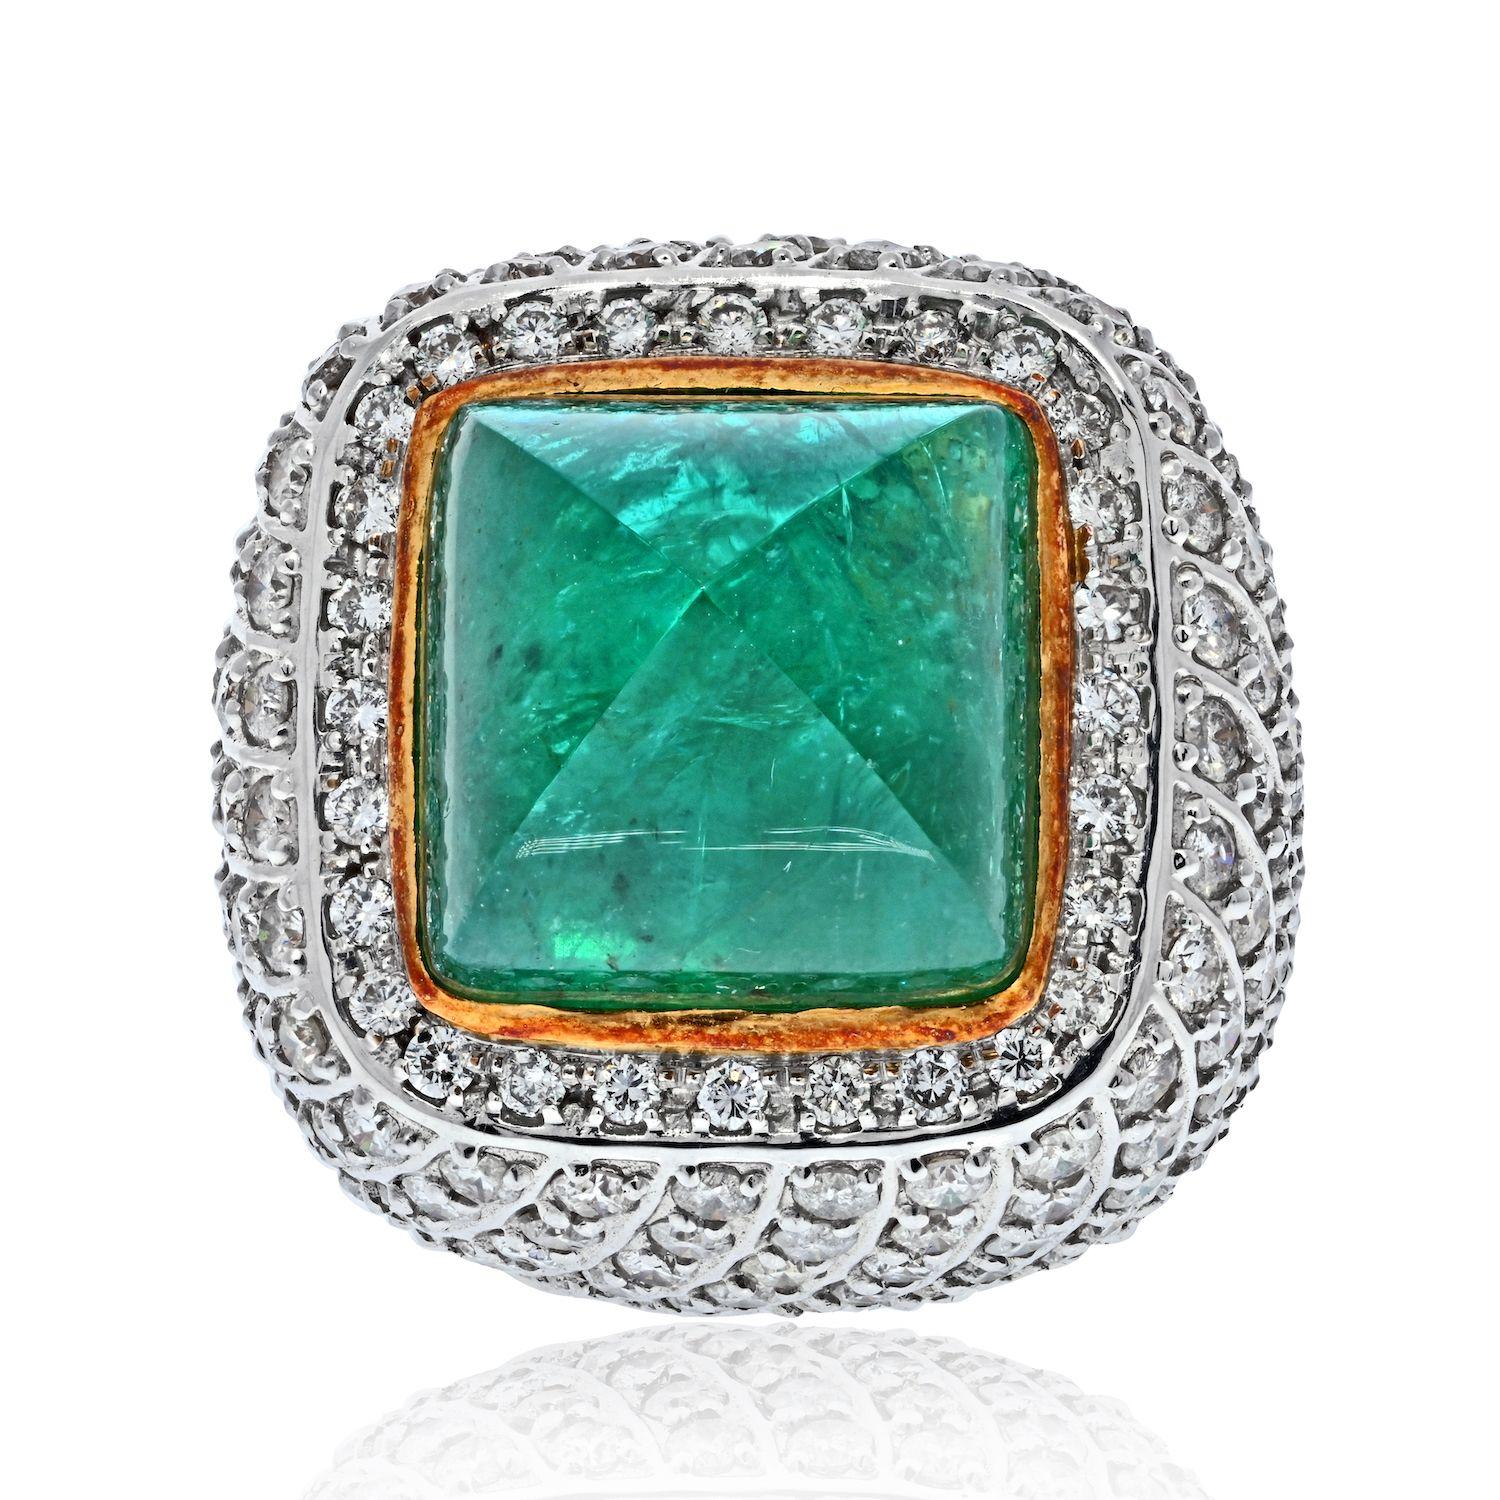 Setzen Sie ein Zeichen mit Ihrer Lieblingsfarbe: Grün. Noch beeindruckender ist die Größe dieses zuckerhutgrünen Smaragds: Ein atemberaubender Stein von 38 Karat ist ein echter Hingucker. 
Wir lieben den hellen Farbton des Edelsteins, der aber nicht